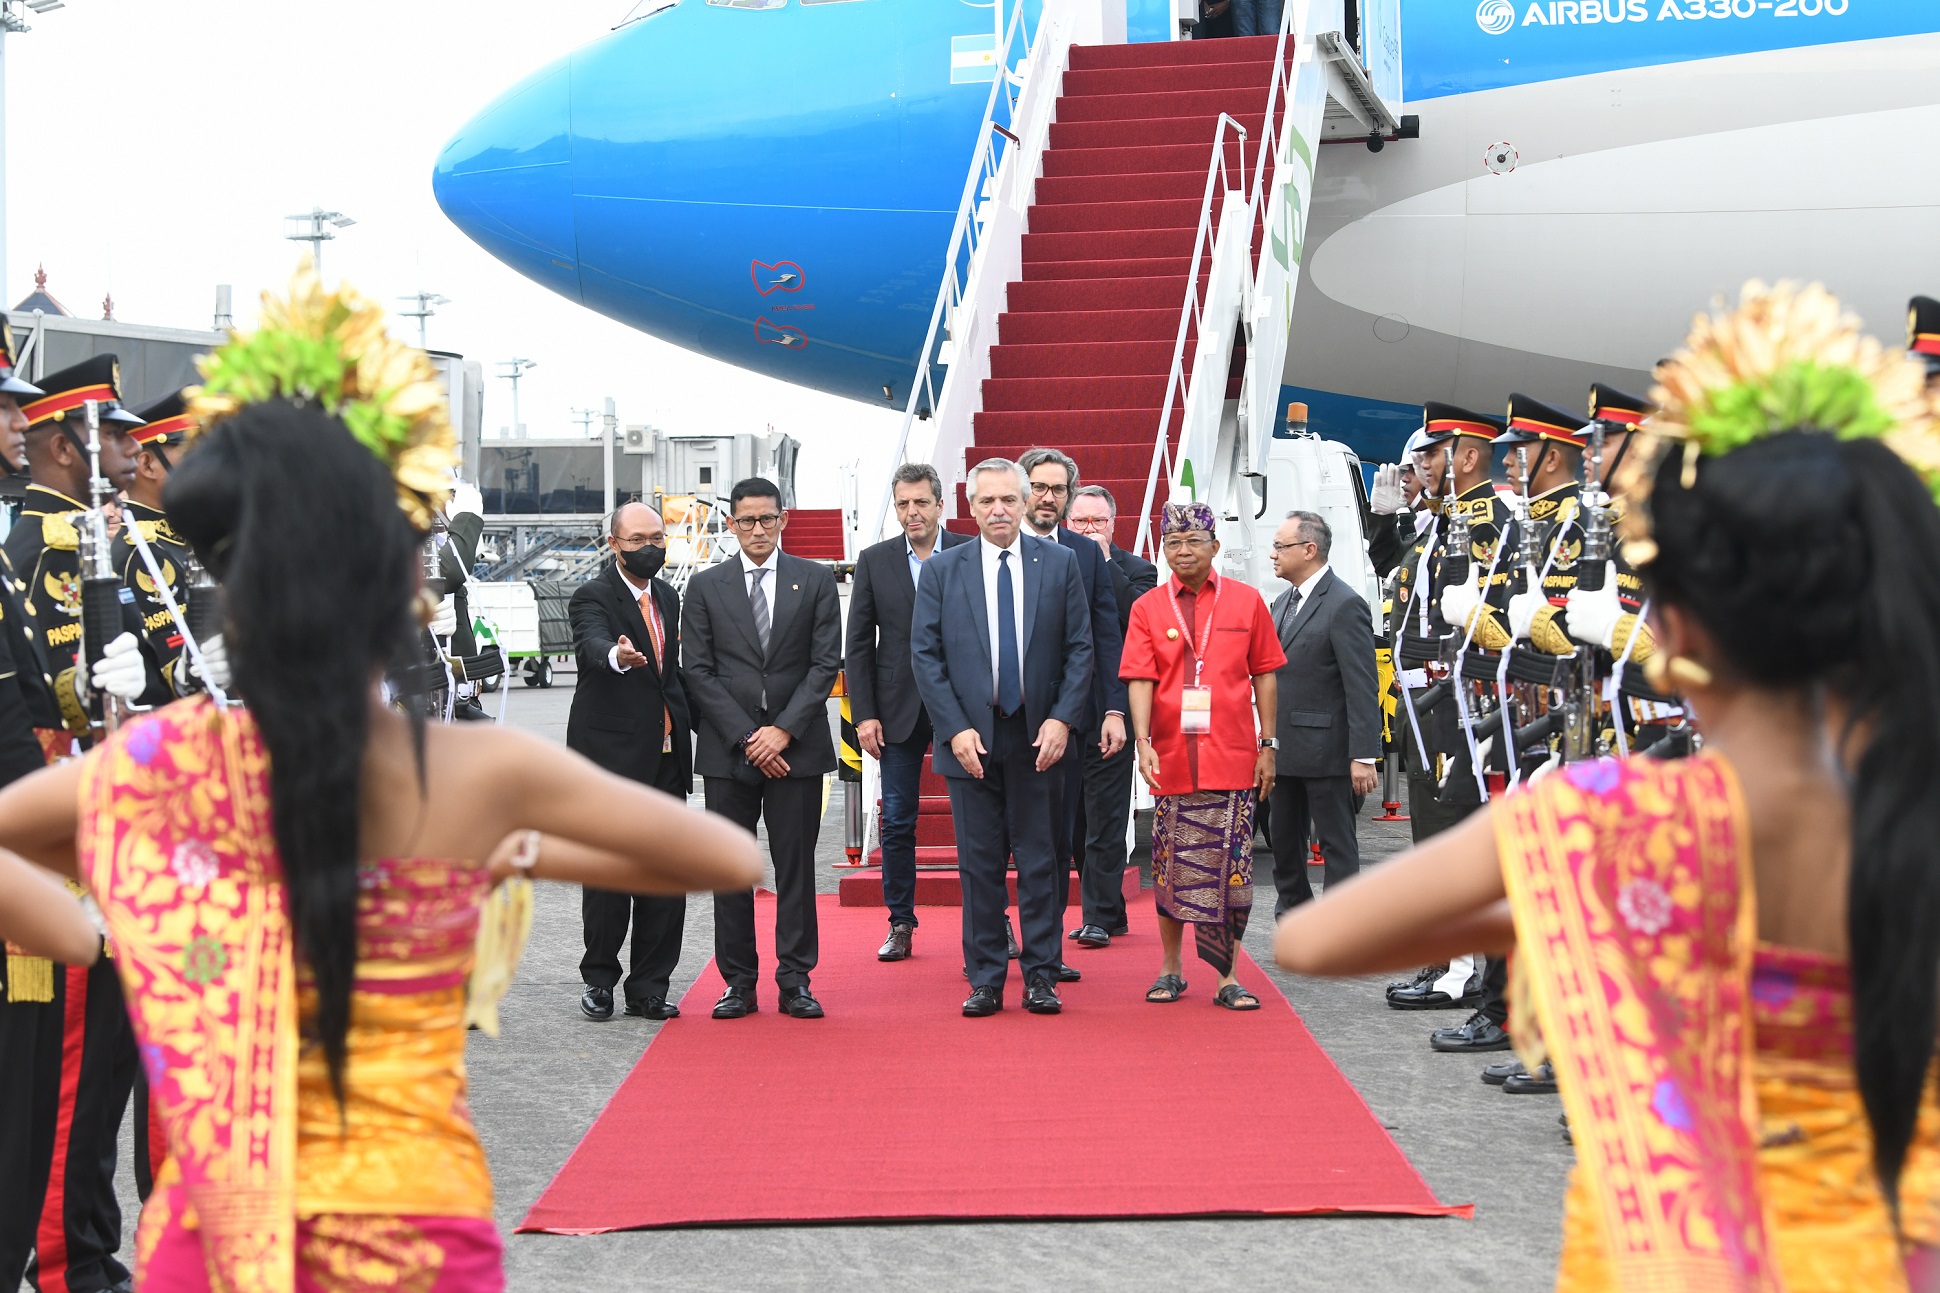 El presidente llegó a Bali para participar de la Cumbre del G20